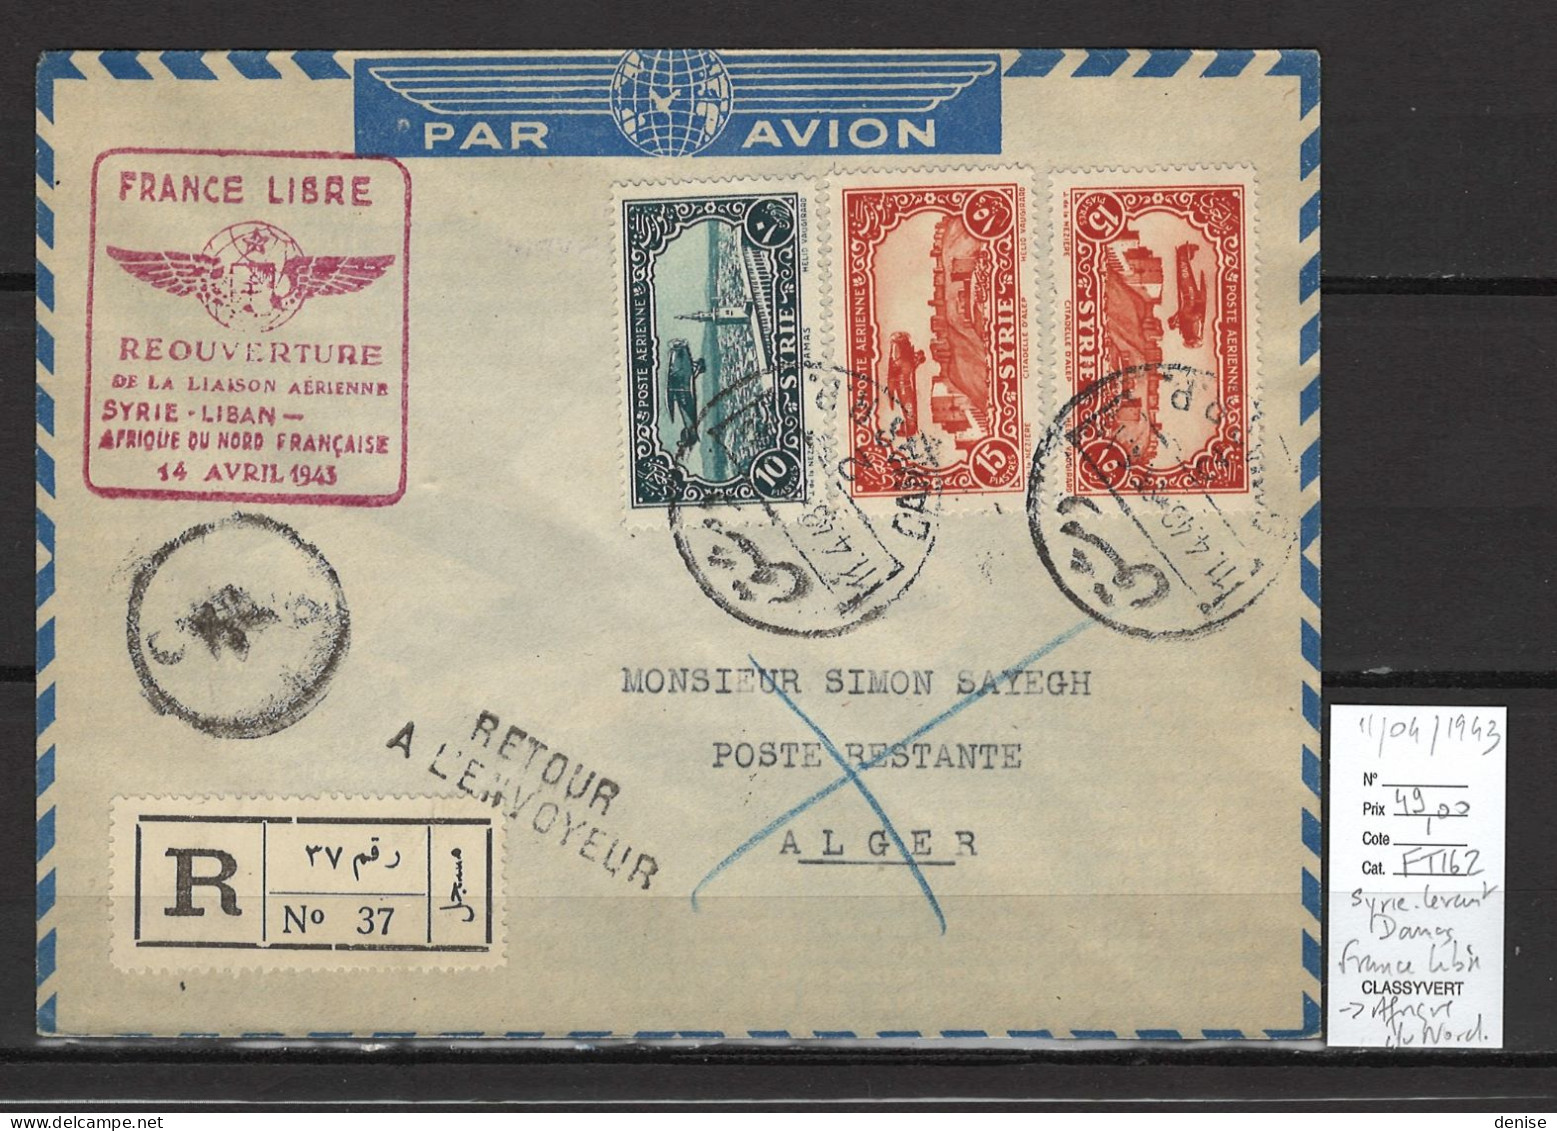 Syrie - France Libre - 1er Vol Afrique Du Nord Alger - 11/04/1943 - Luchtpost